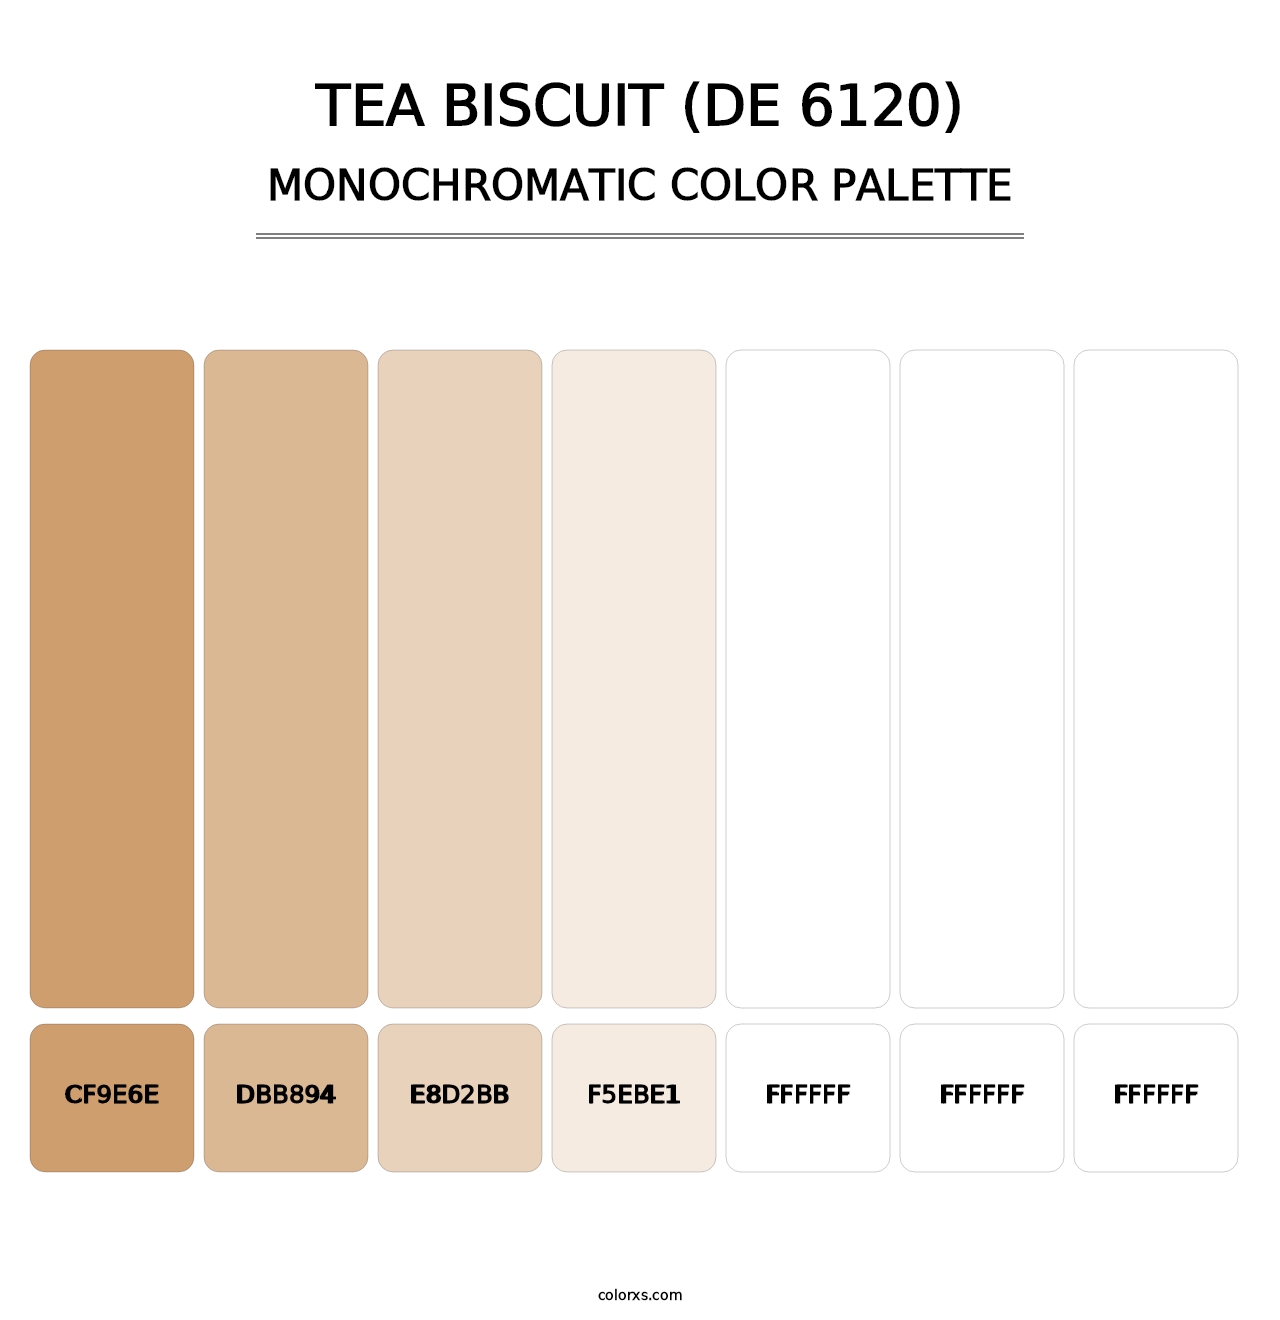 Tea Biscuit (DE 6120) - Monochromatic Color Palette